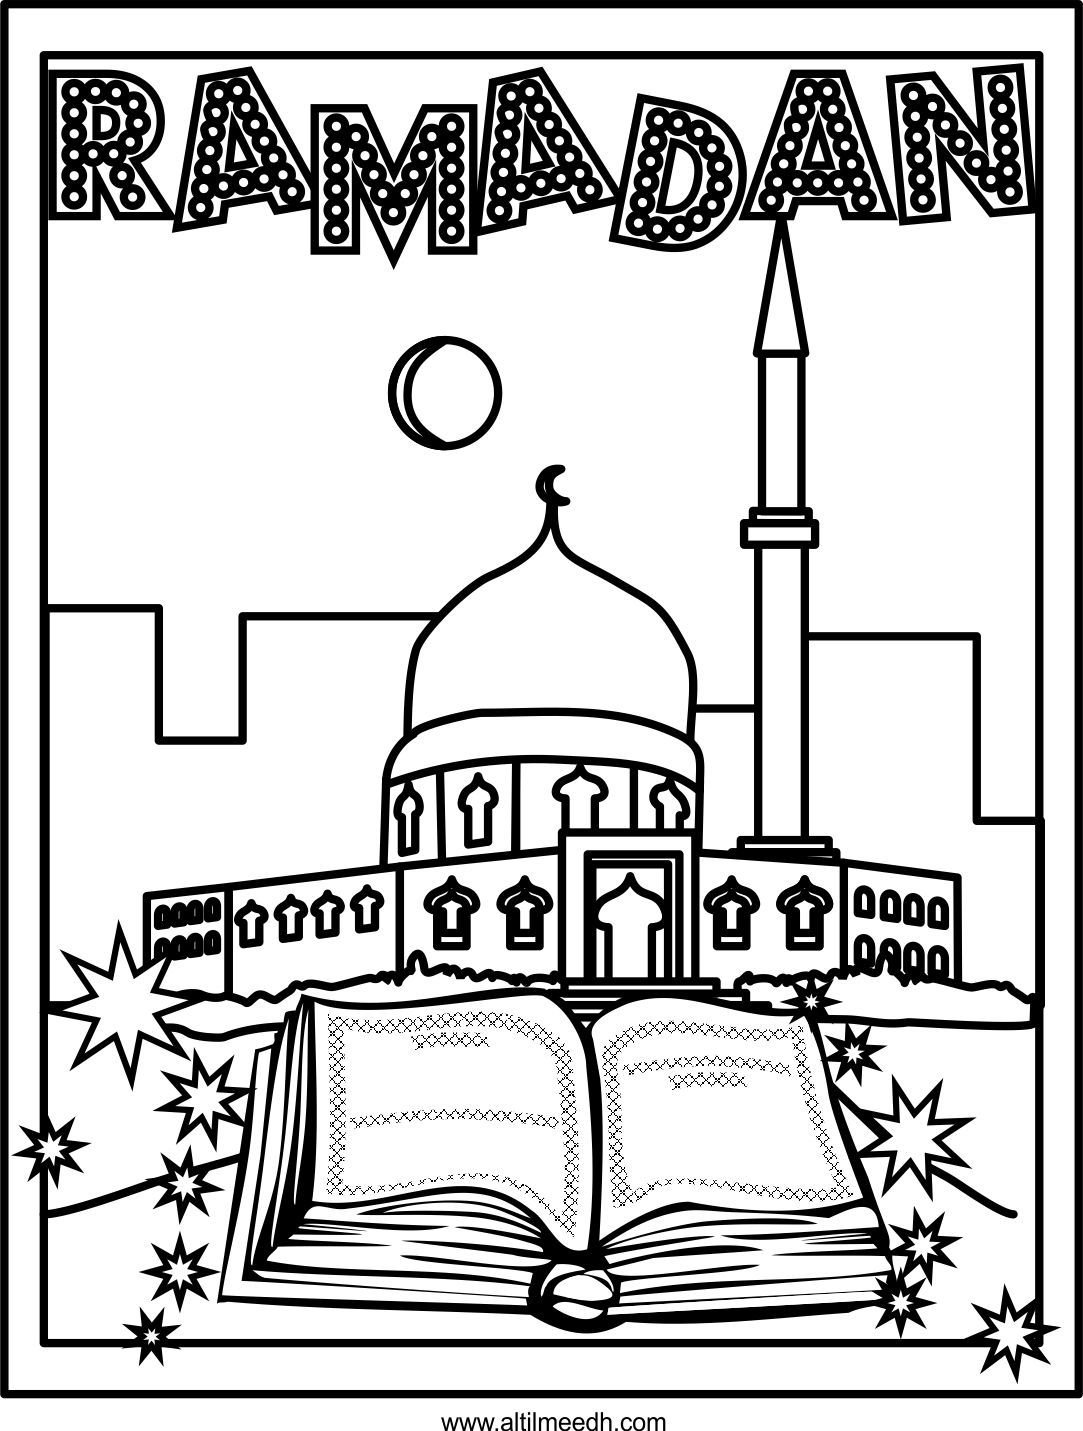 Раскраска Рамадан